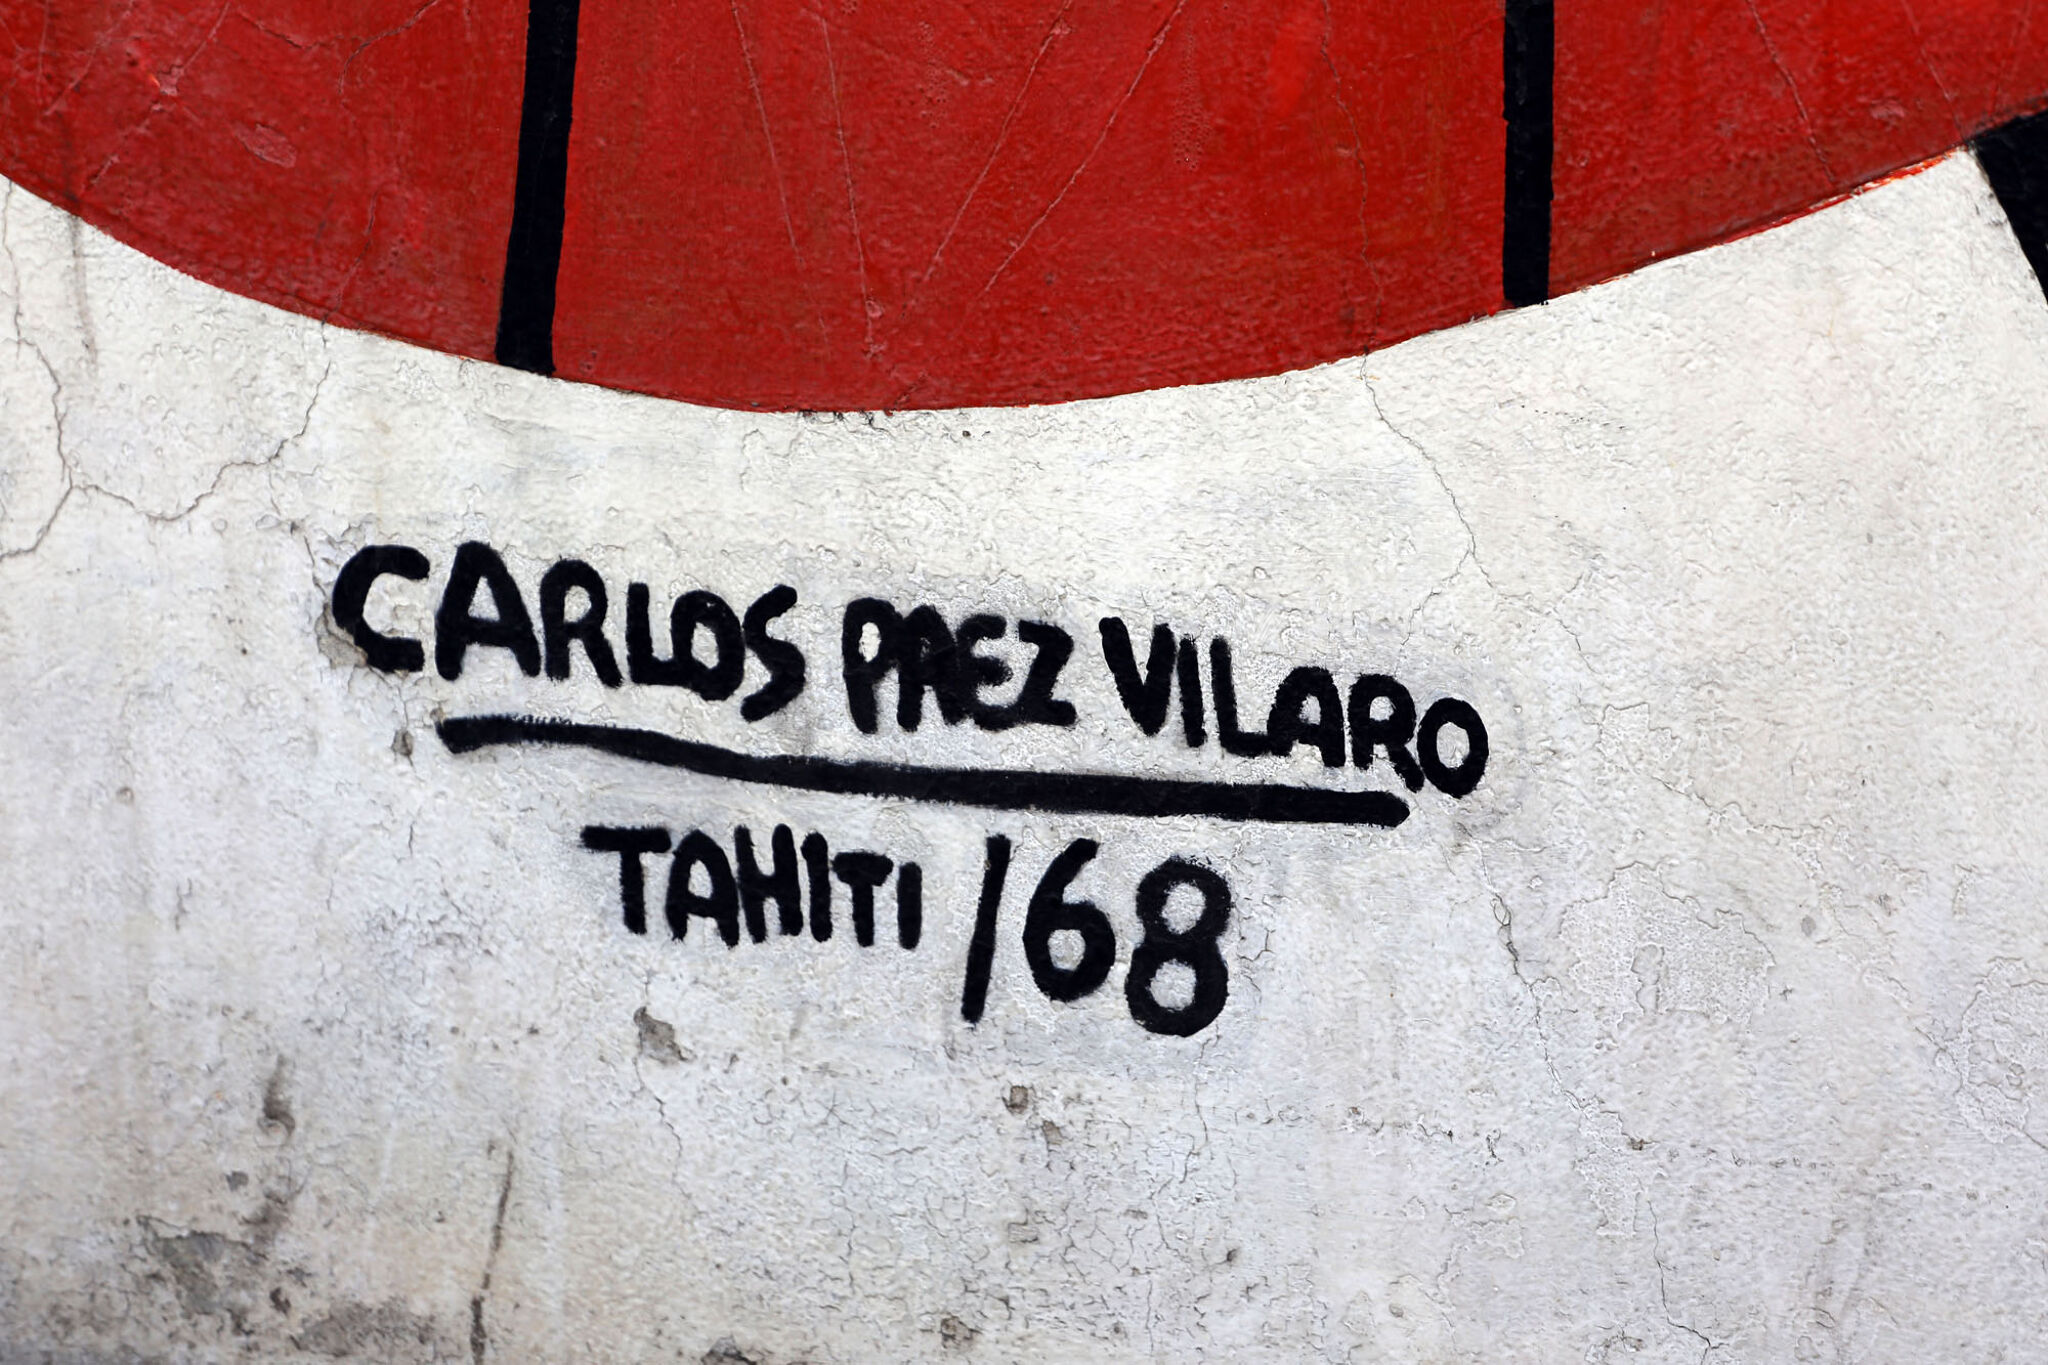 Carlos Páez Vilaró&mdash;Carlos Páez Vilaró in Papeete